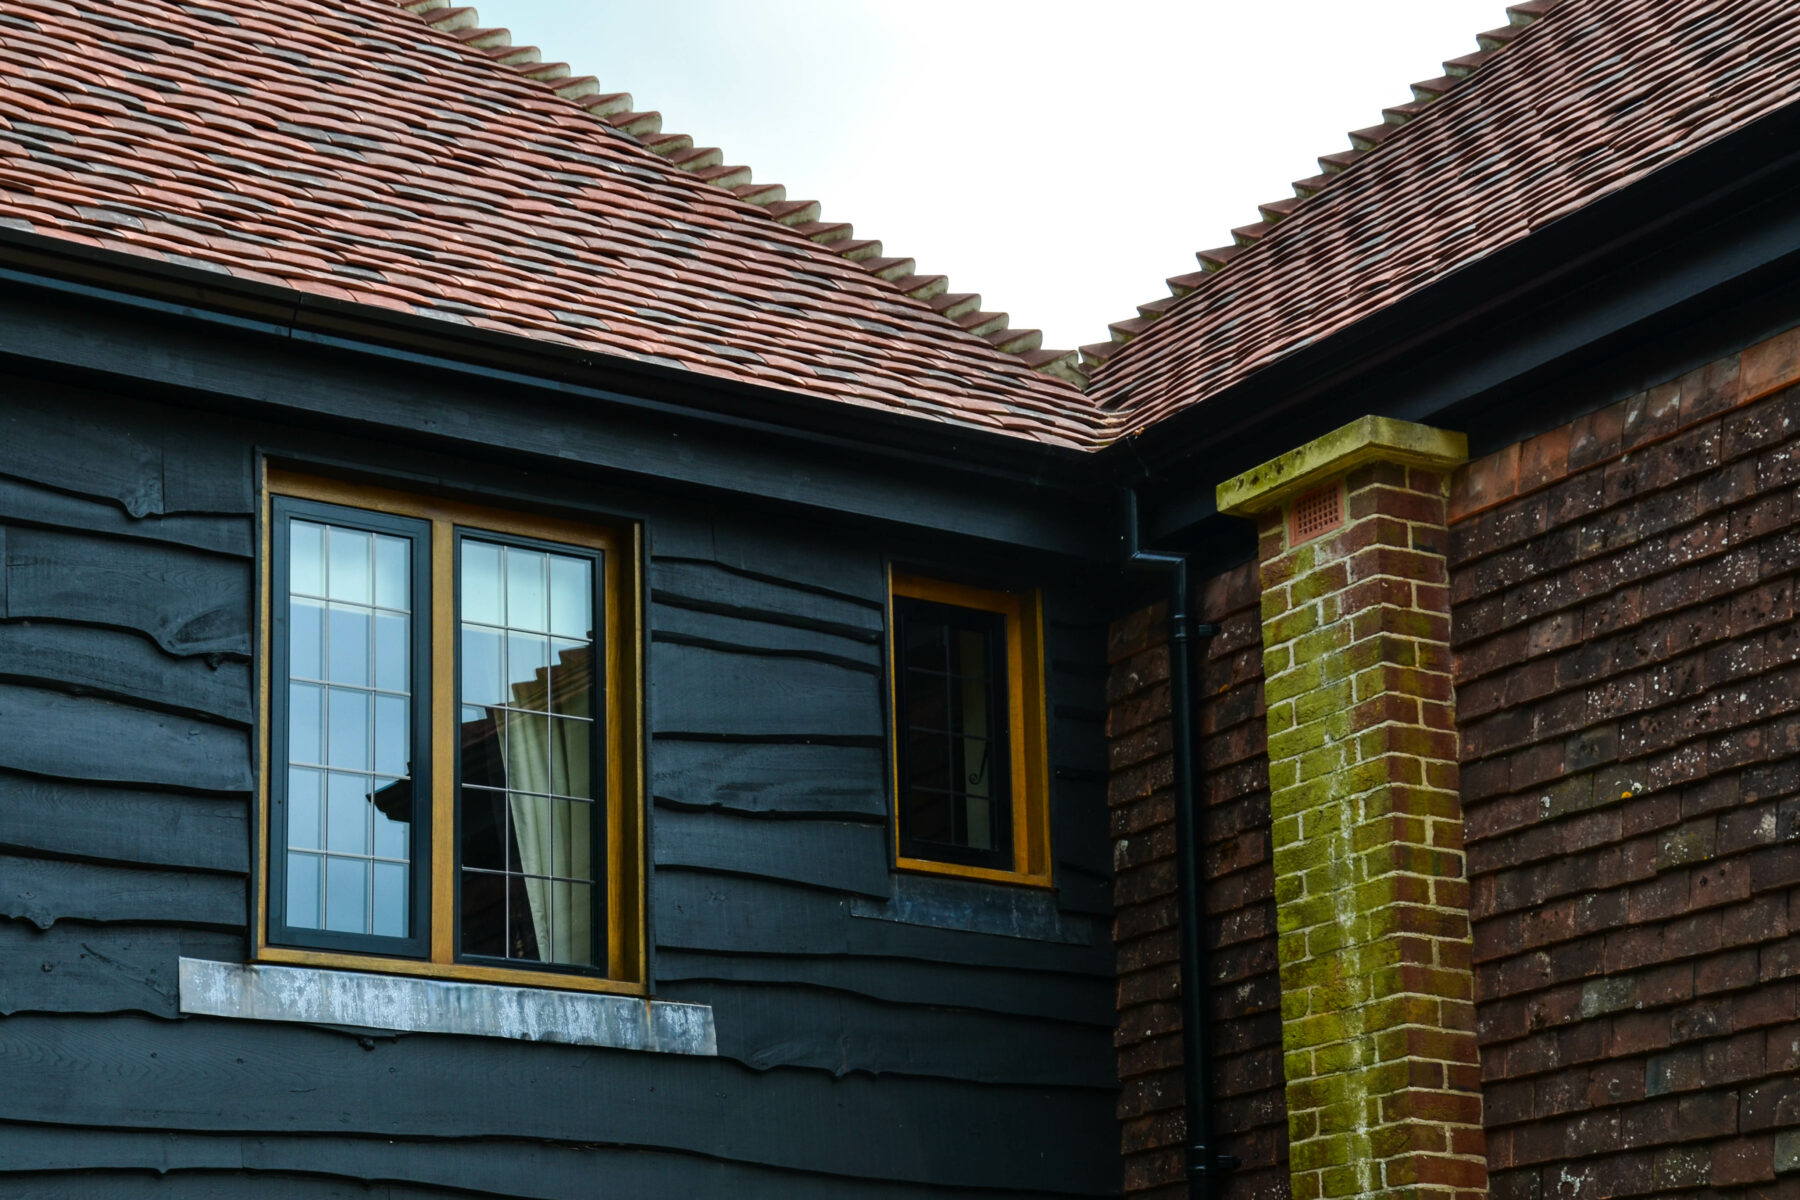 Wooden casement windows in heritage home